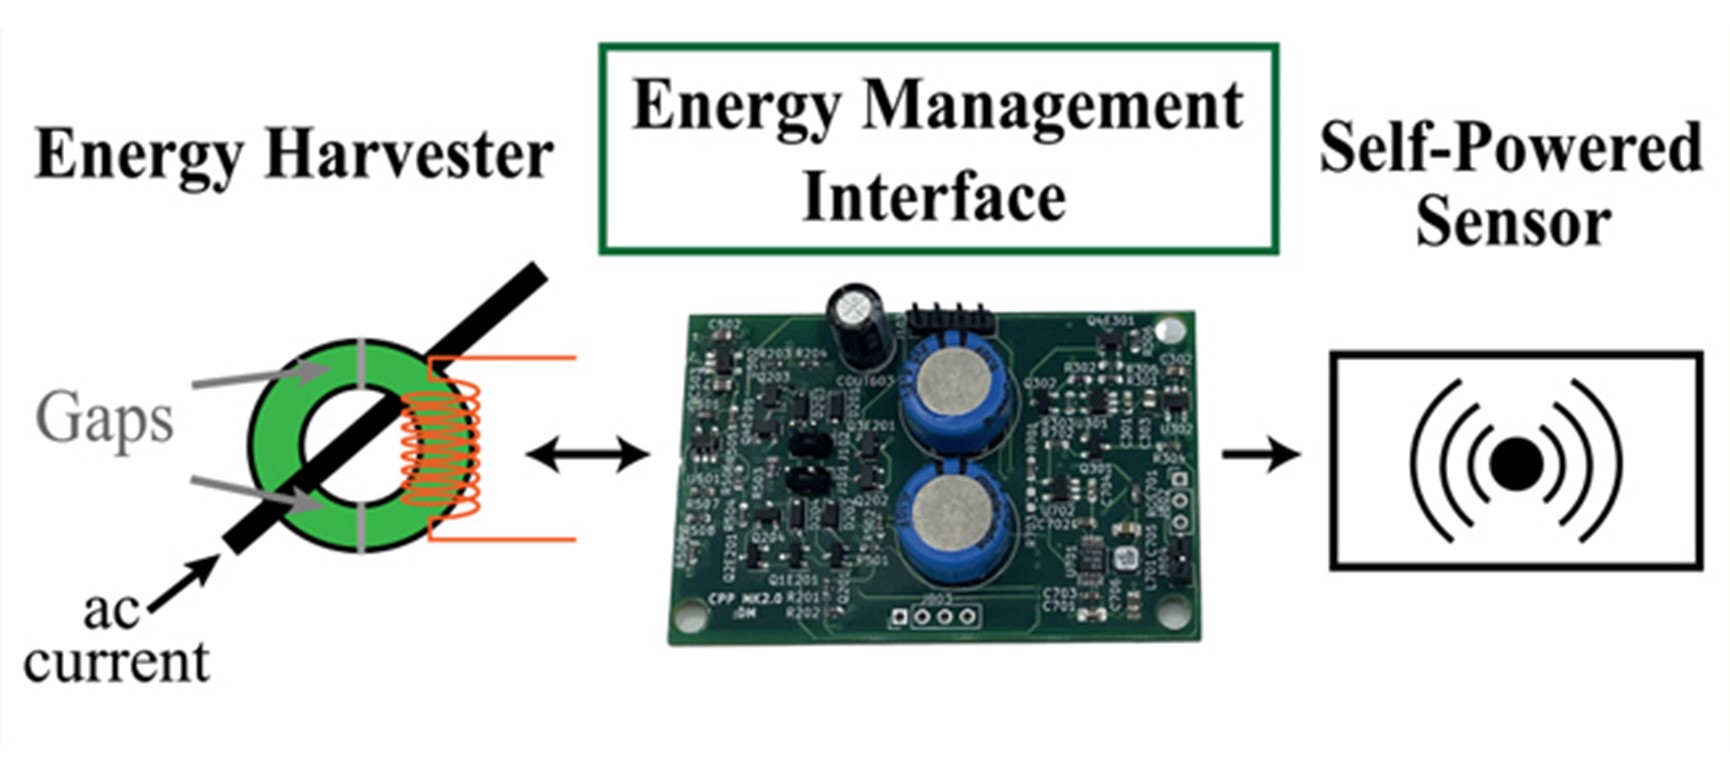 这种能源管理接口是自供电、无需电池传感器的“大脑”，它可以从导线周围产生的磁场中获取运行所需要的能量